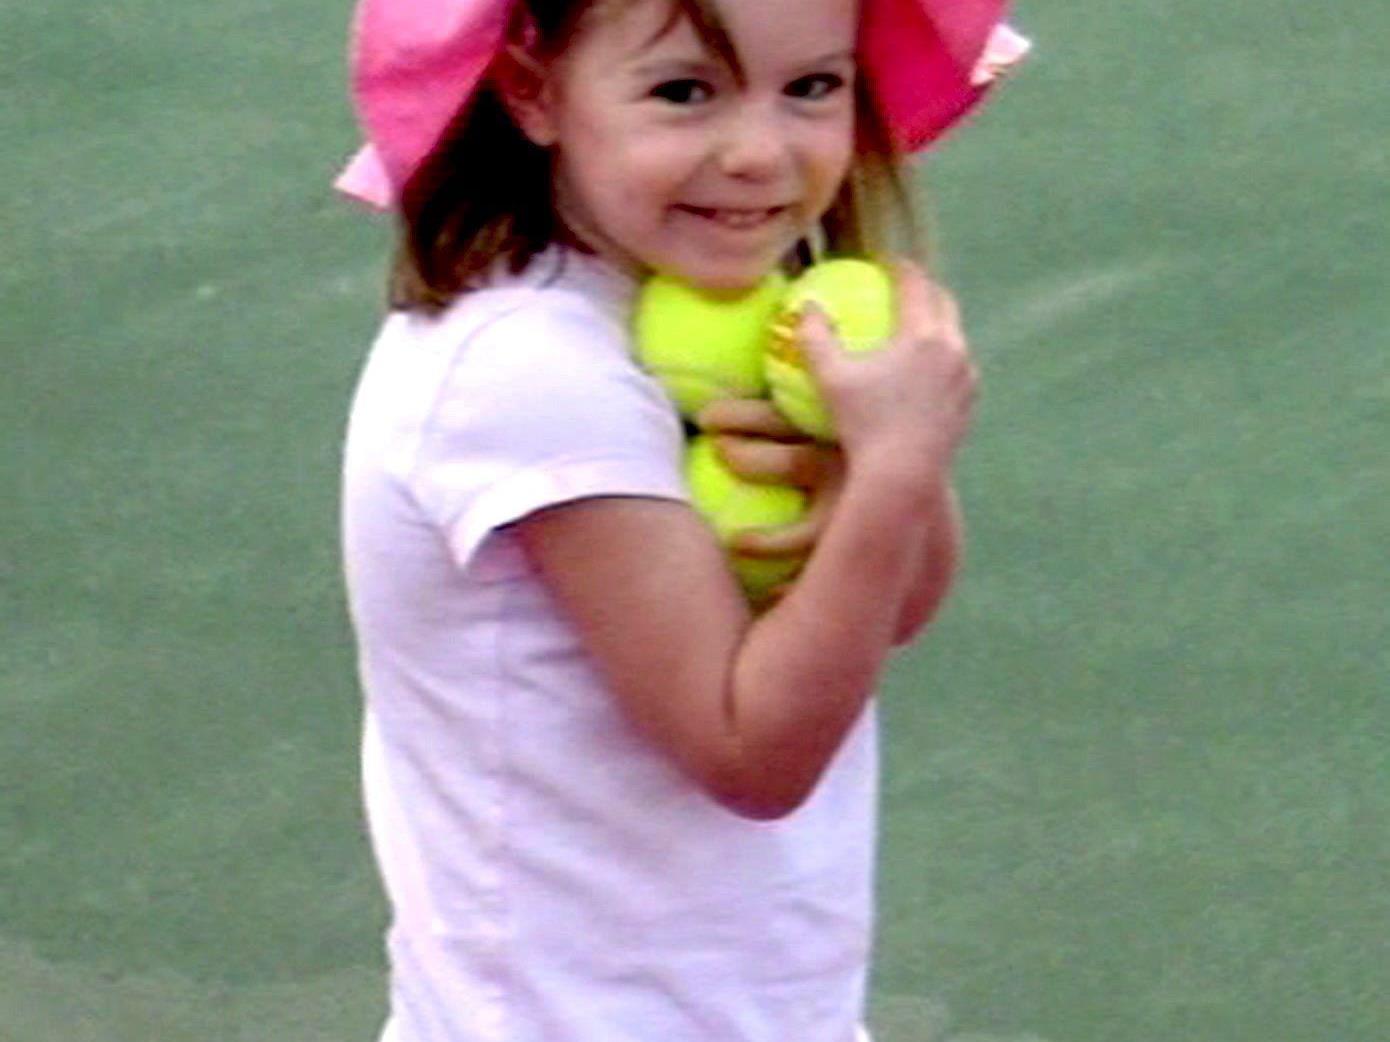 Die kleine Maddie war 2007 im Alter von drei Jahren aus einer Ferienanlage im portugiesischen Praia da Luz verschwunden.